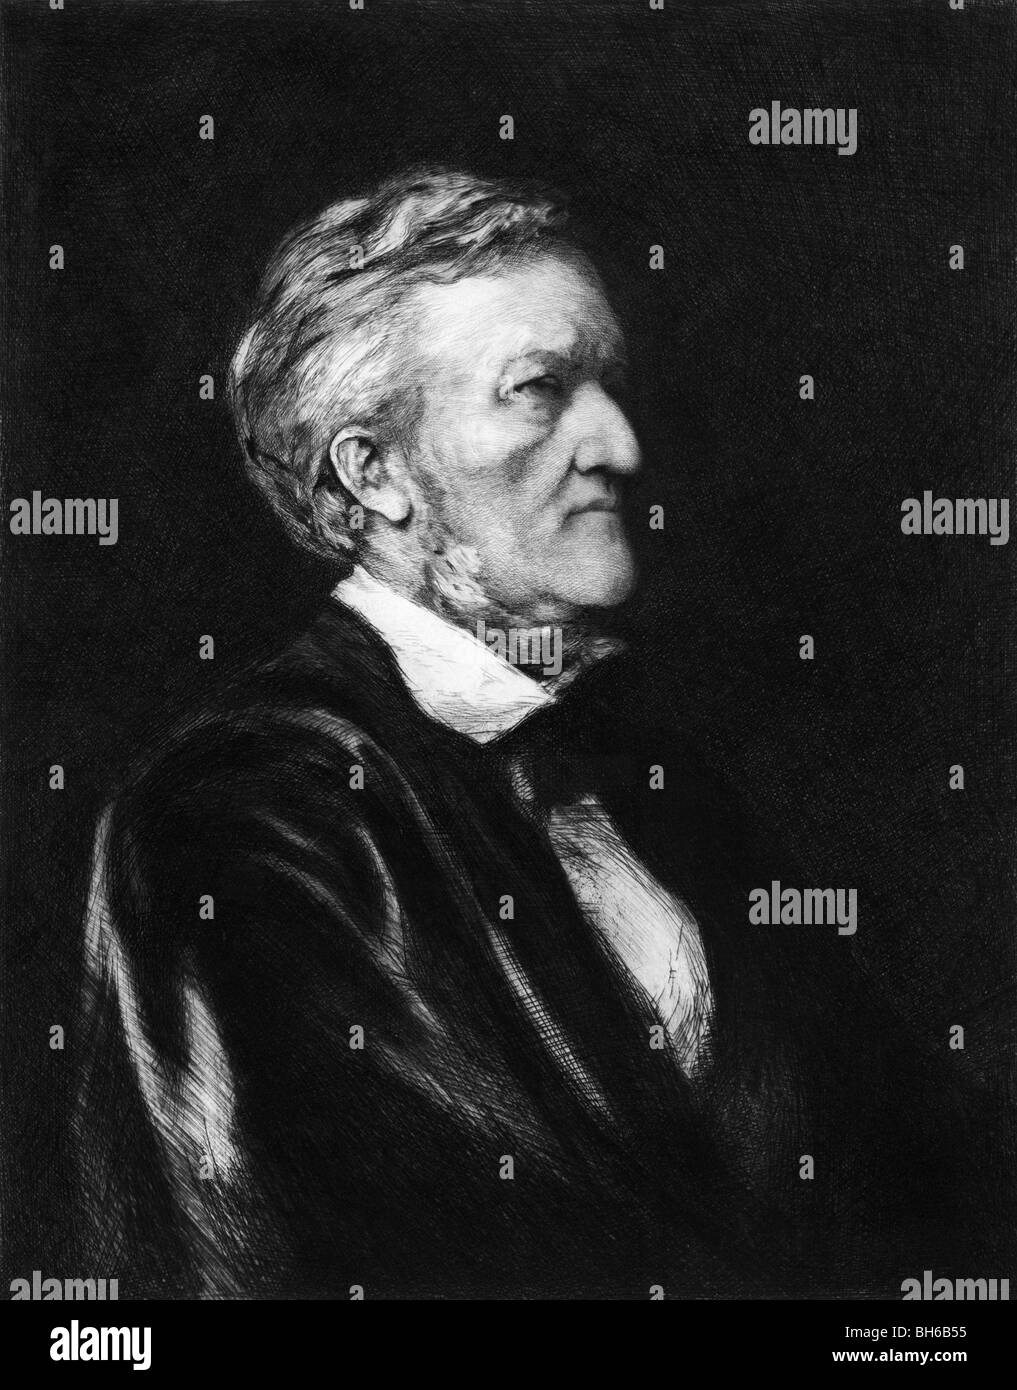 Hochformat ca. 1878 von Richard Wagner (1813-1883) - der deutsche Komponist und Dirigent, der in erster Linie berühmt für seine Opern. Stockfoto